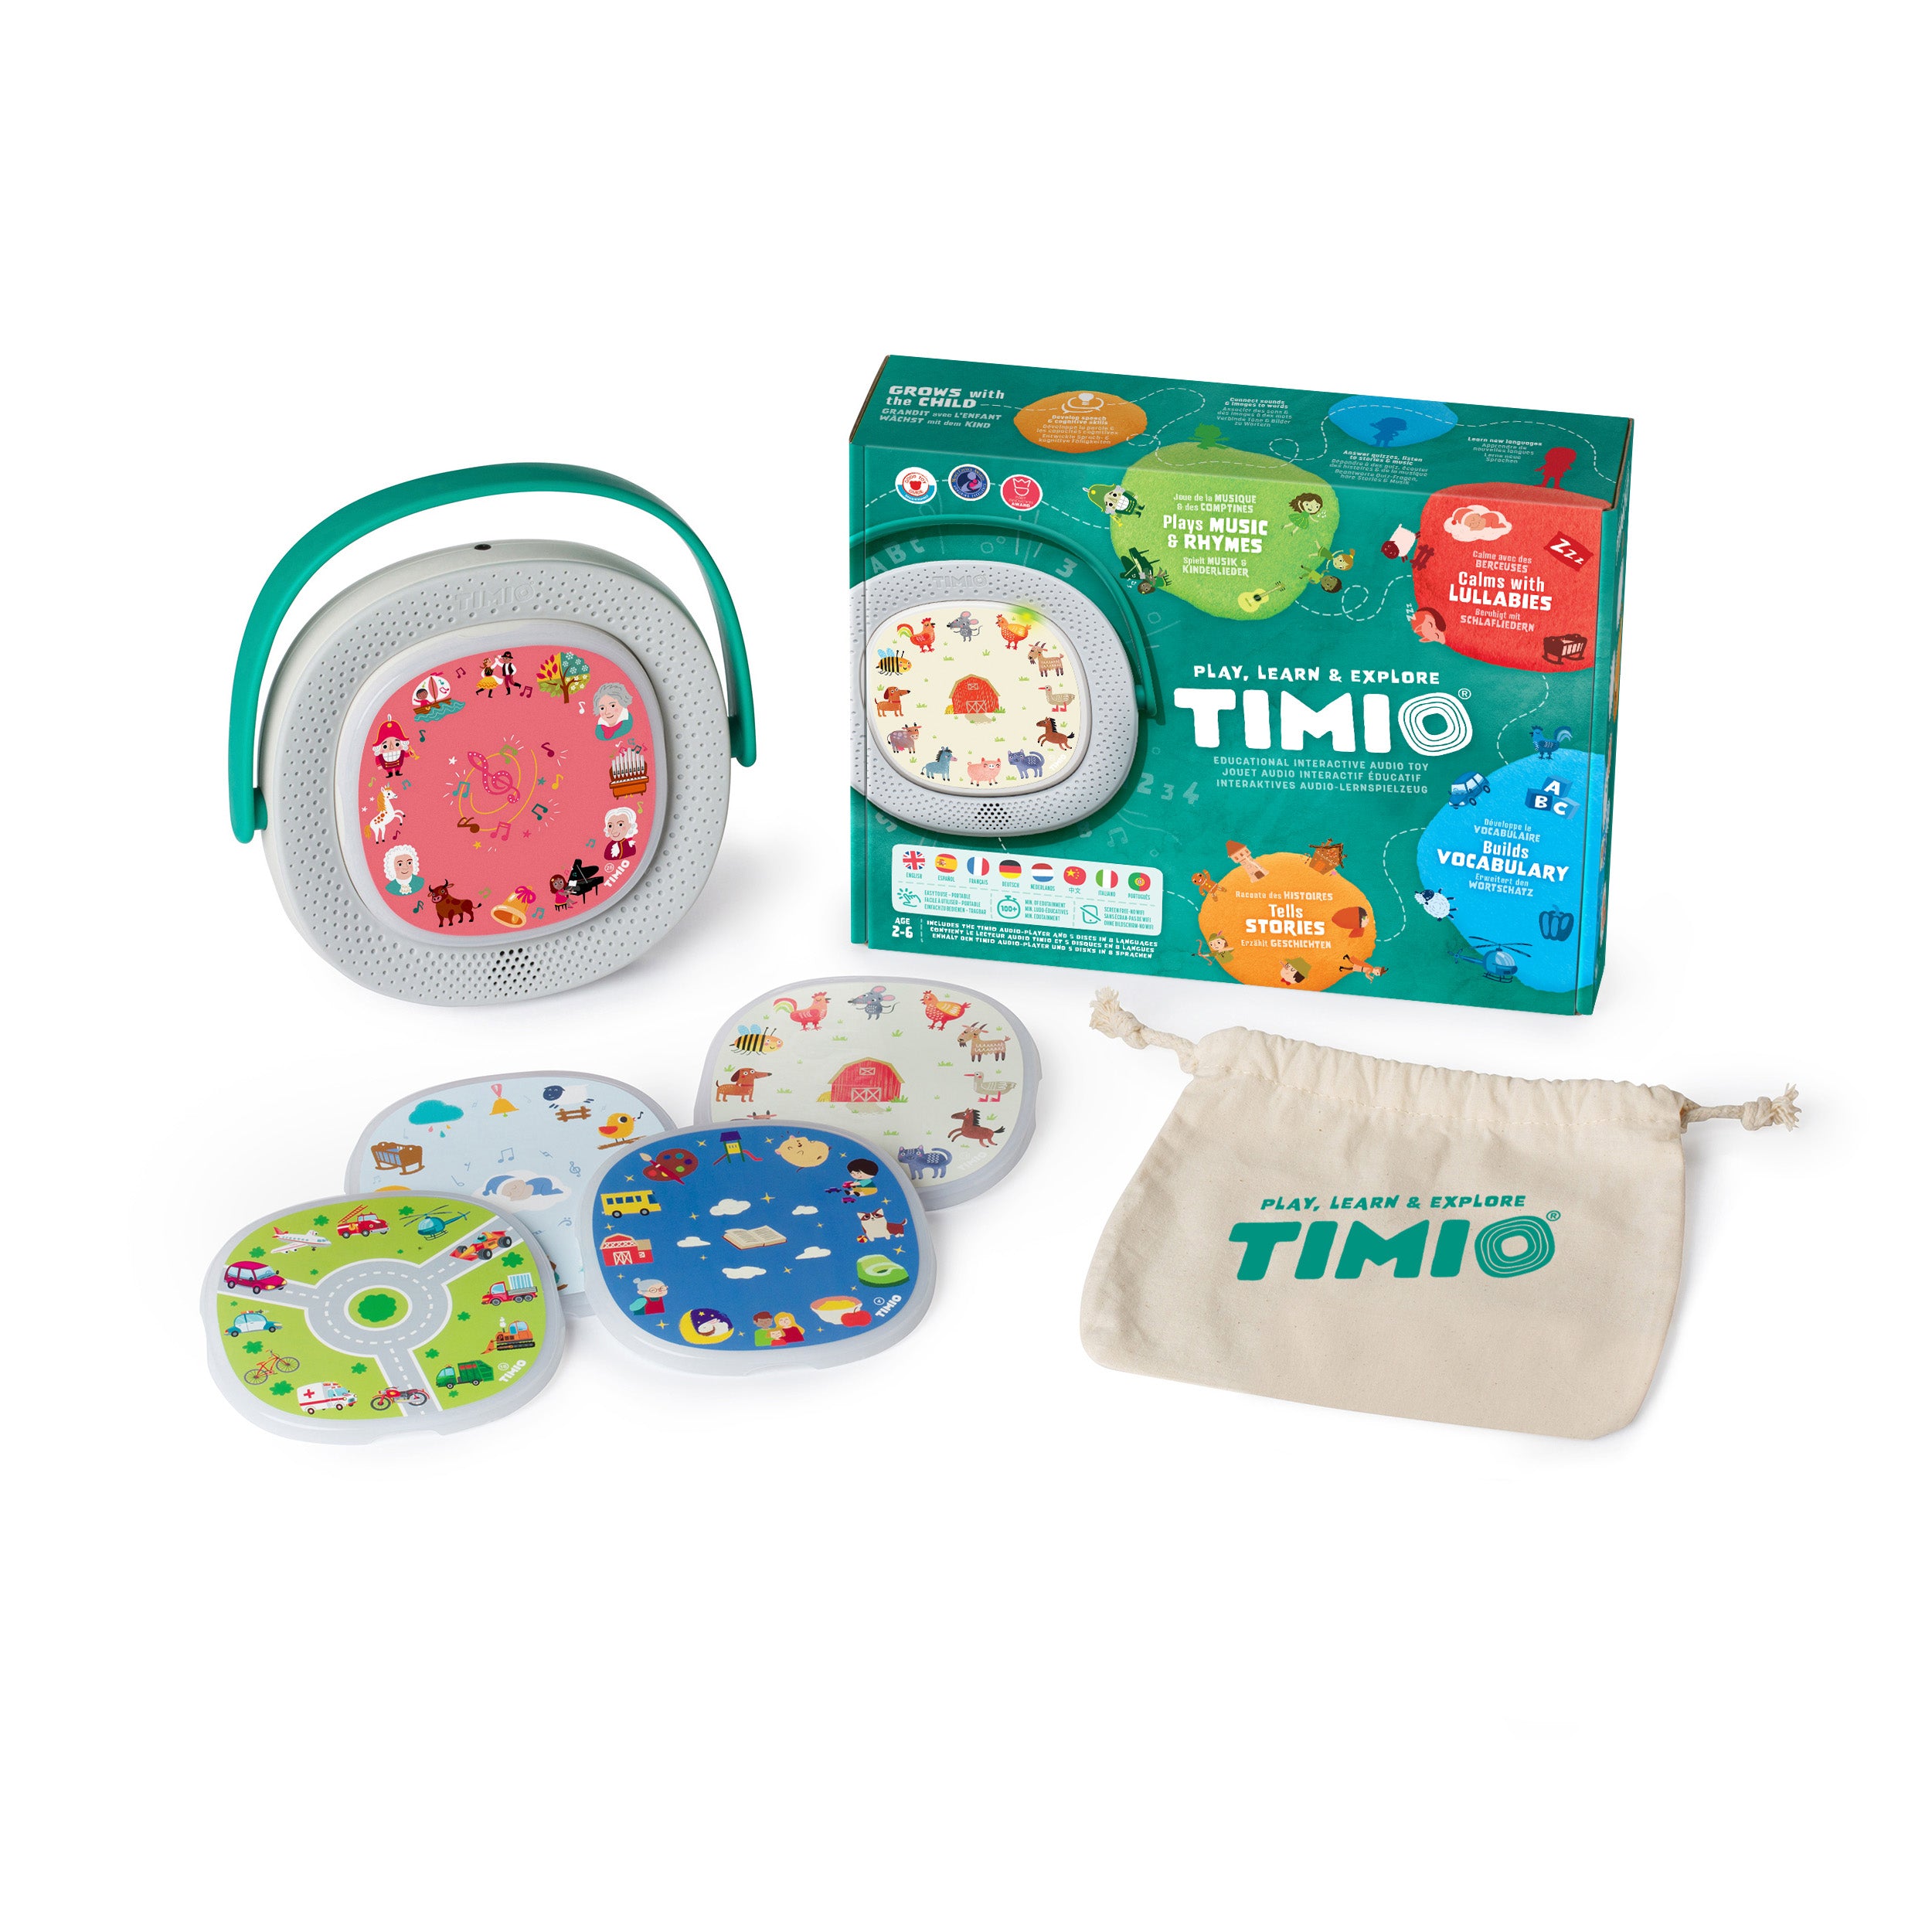 Le jouet multilingue n°1 pour enfants, Comment eviter les écrans ? Voici  Timio ! ✓ Le lecteur éducatif d'audio et de musique interactif sans écran.  💡 Développe la créativité, l'intellect et